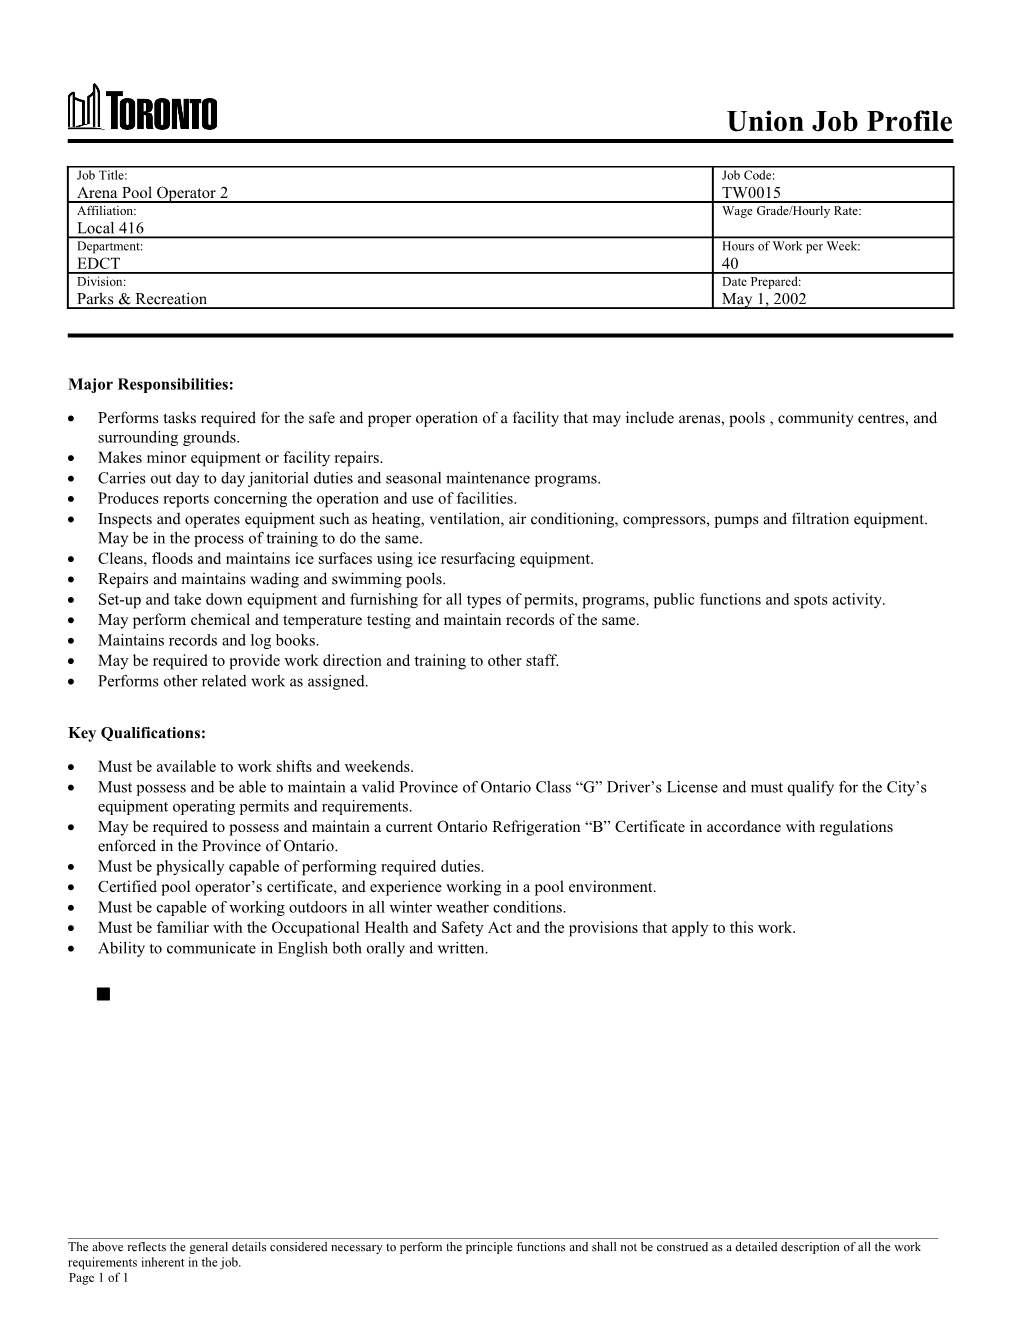 Management Job Description s1